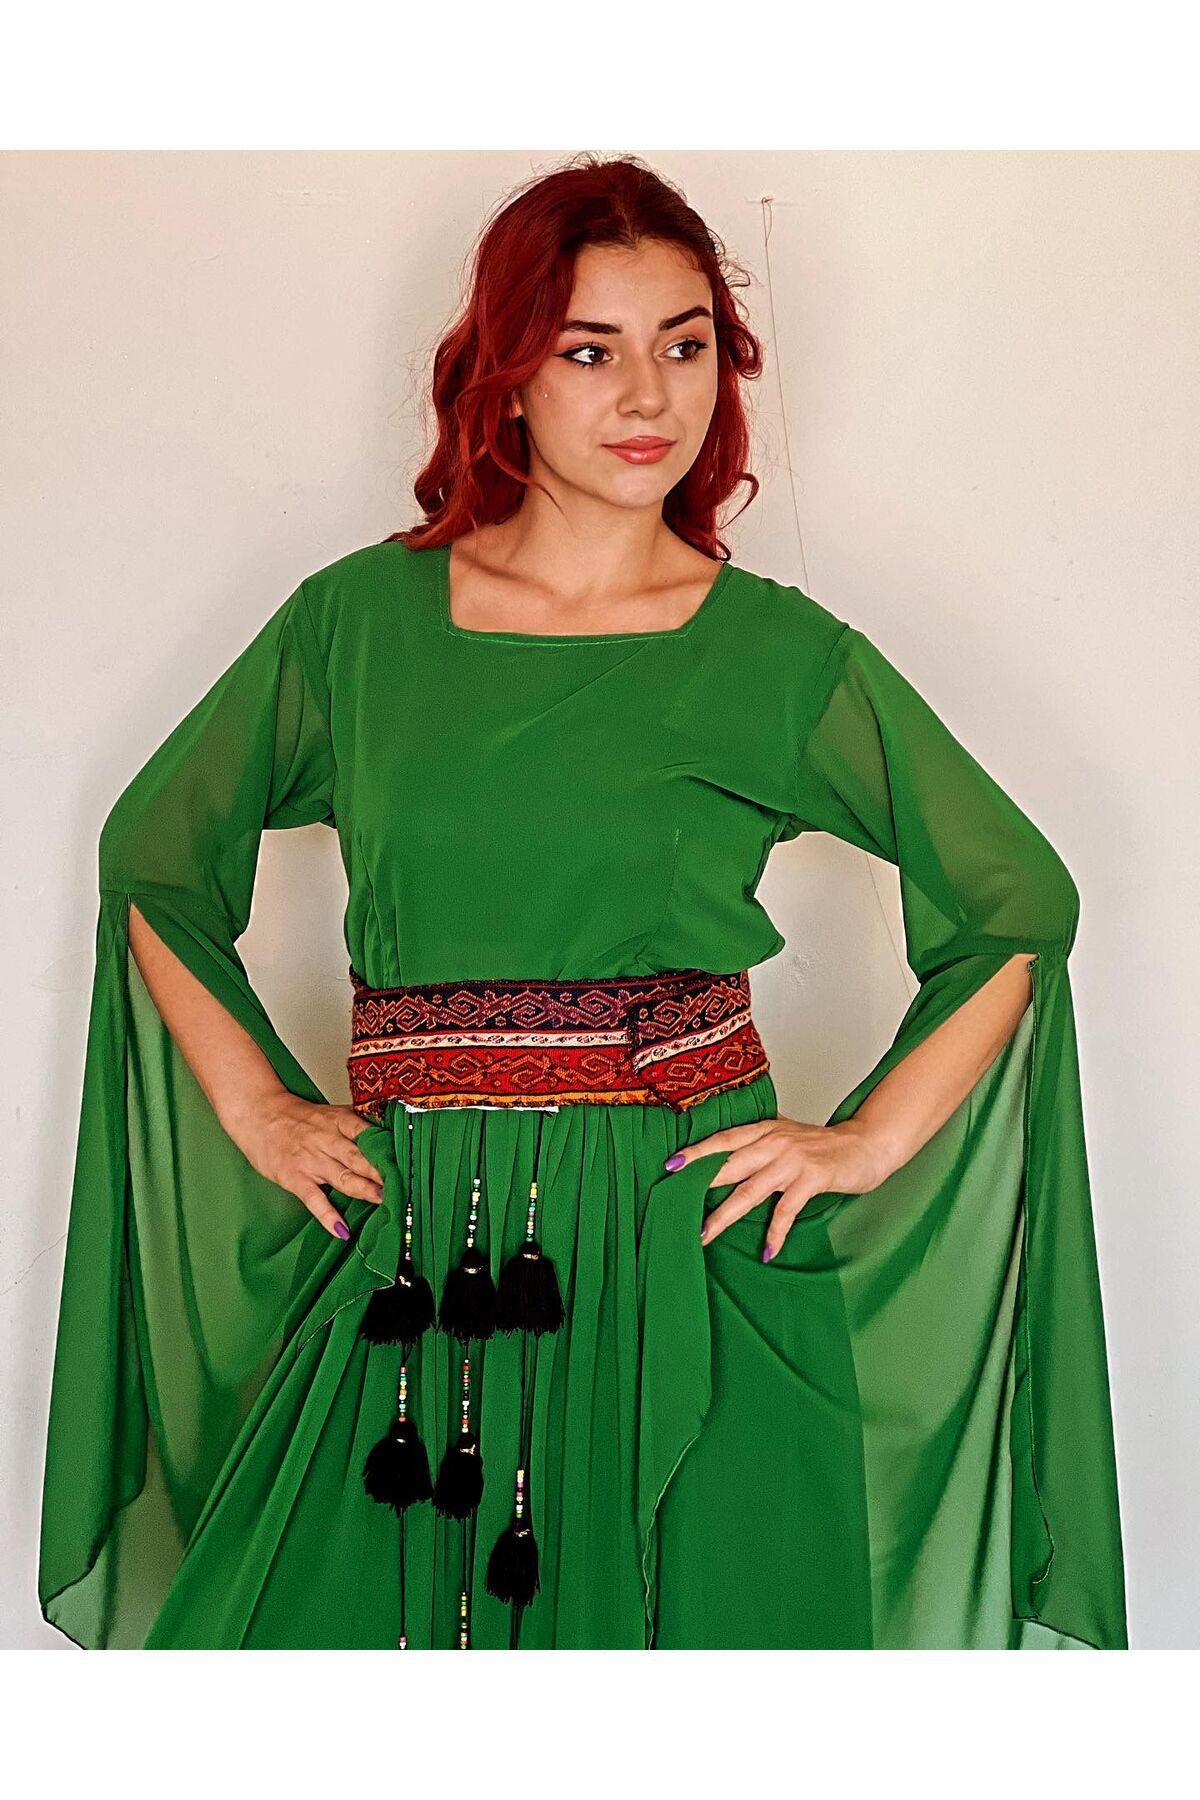 romans yöresel Yeşil Yöresel Elbise, Yöresel kıyafet, Diyarbakır, Mardin, Batman, Şanlıurfa, Batman